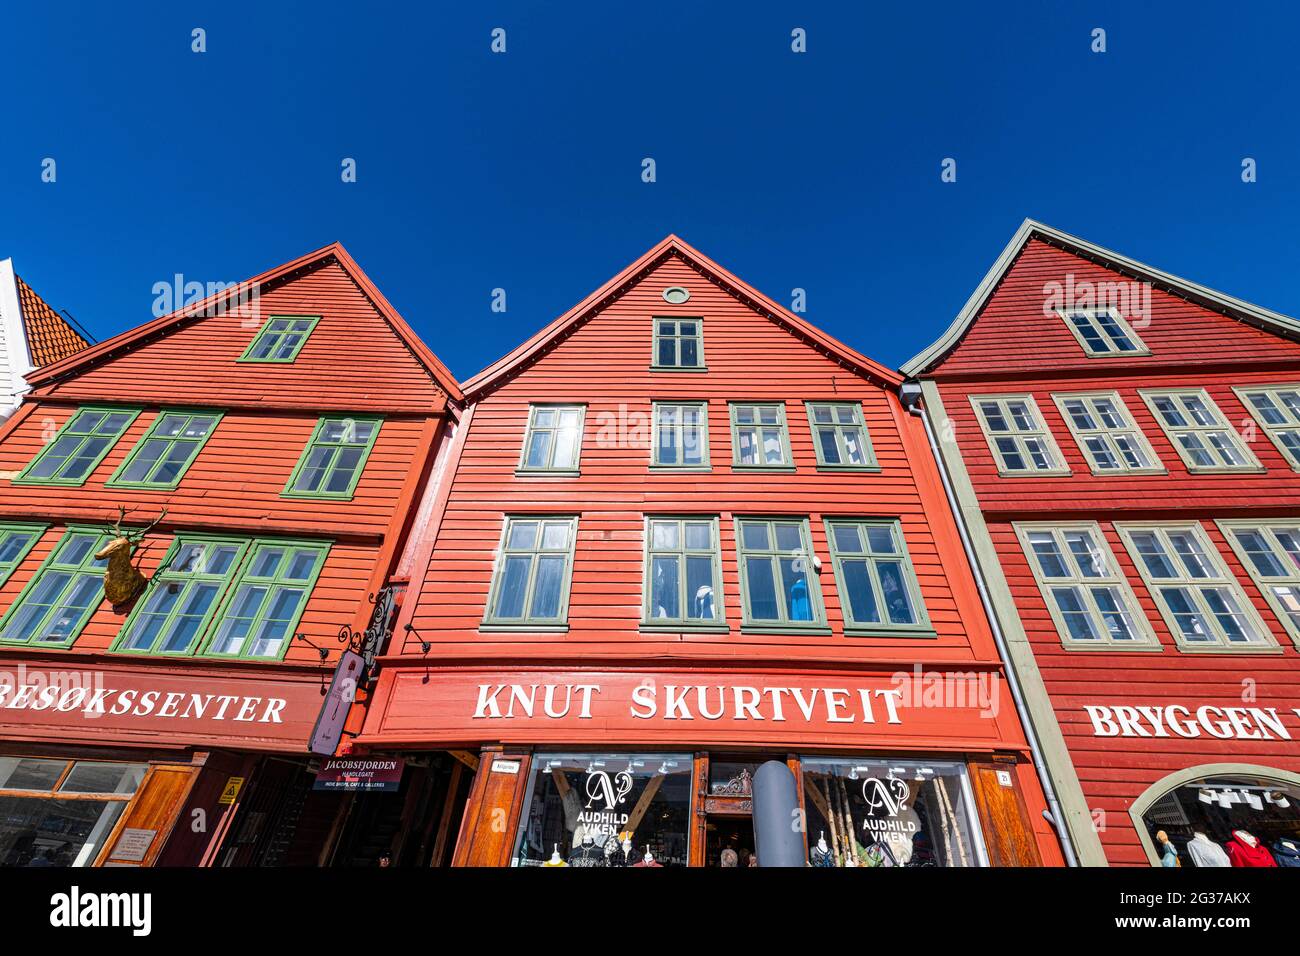 Bryggen, series of Hnaseatic buildings, Unesco world heritage site, Bergen, Norway Stock Photo